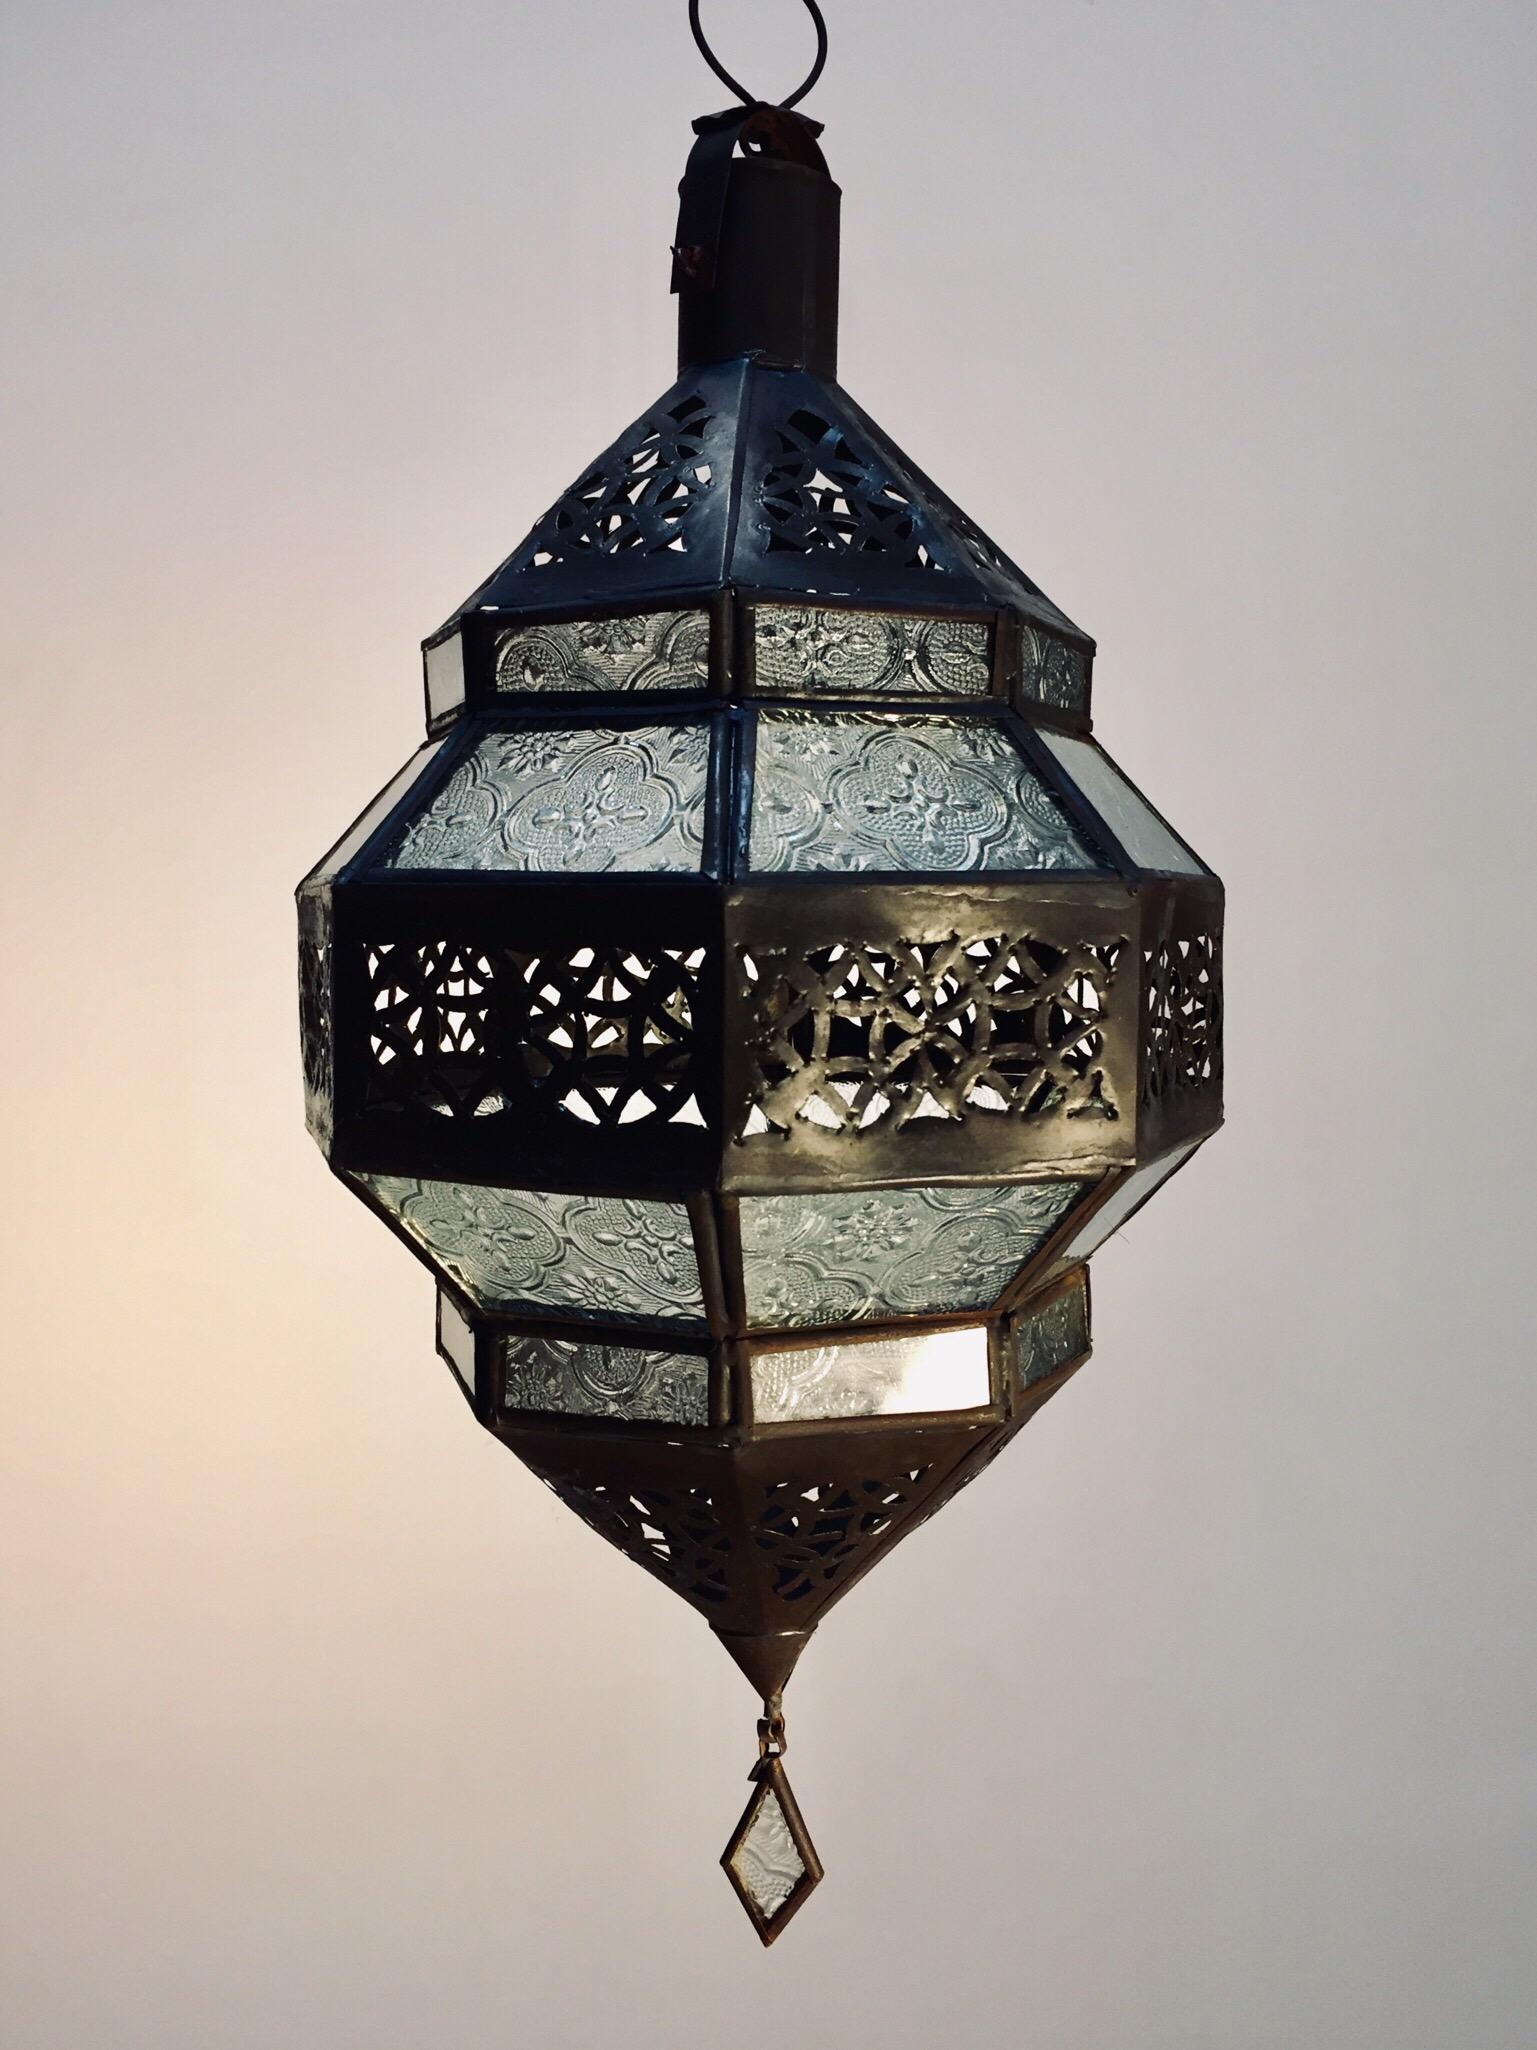 Laterne aus marokkanischem Metall und klarem Milchglas.
Marokkanische Laterne in achteckiger Form mit rostfarbener Metalloberfläche und klarem Glas.
Das obere und untere Metall ist handgeschnitten in durchbrochenem maurischem Design.
Diese